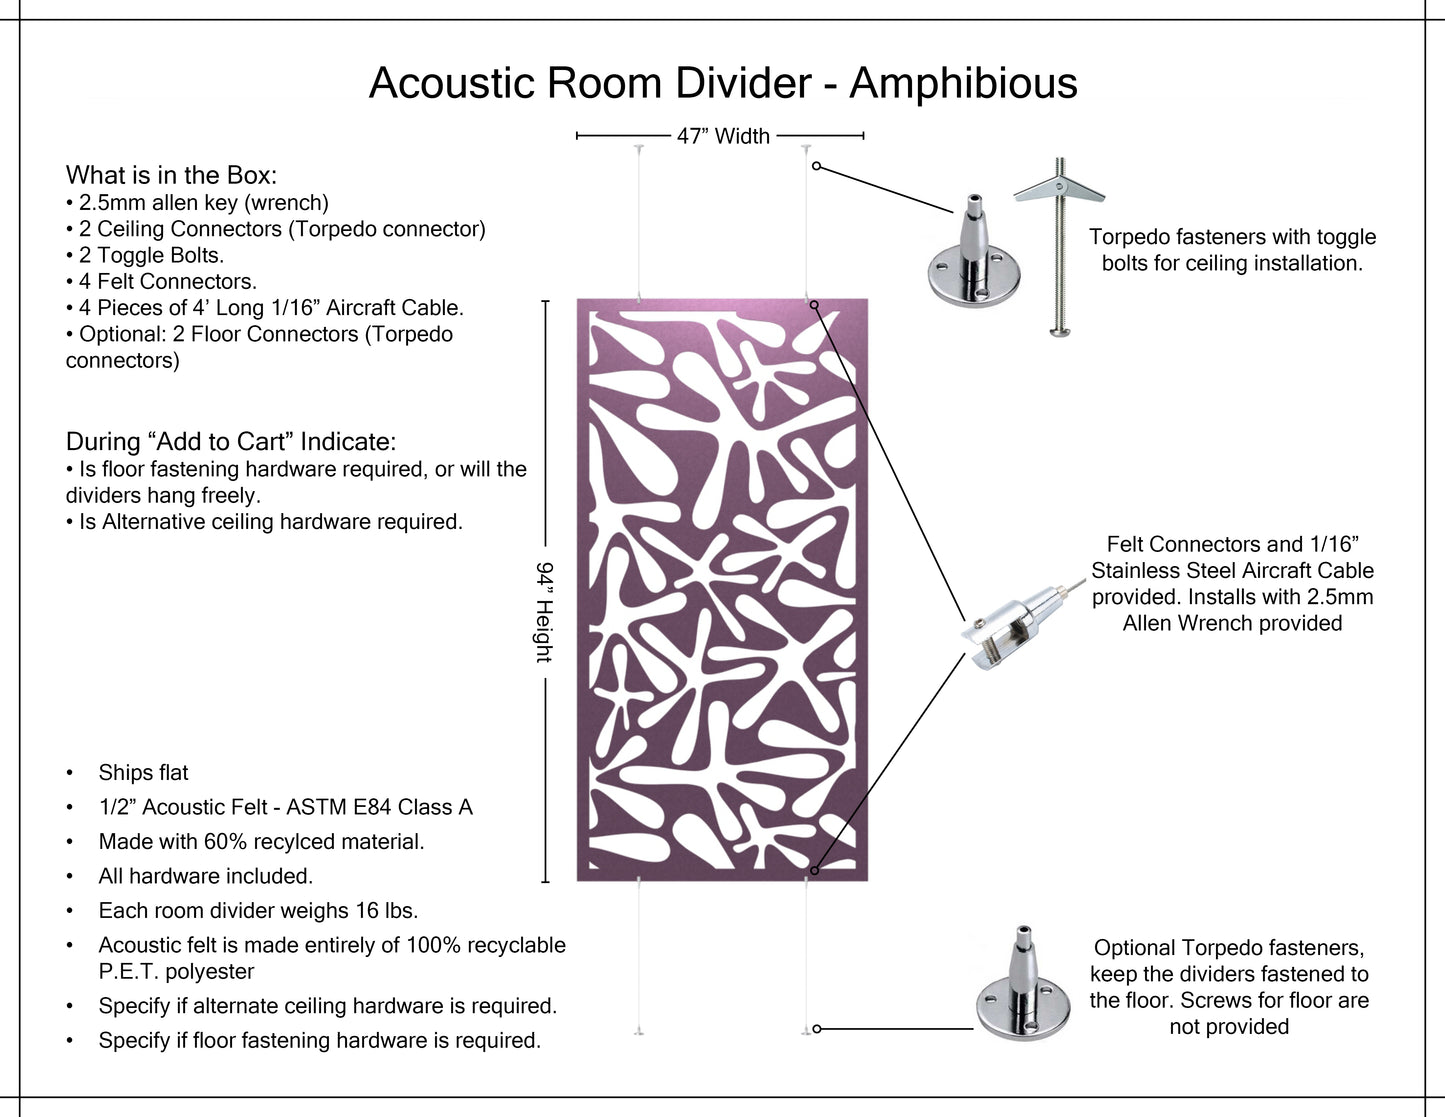 4x8 Acoustic Room Divider - Amphibious